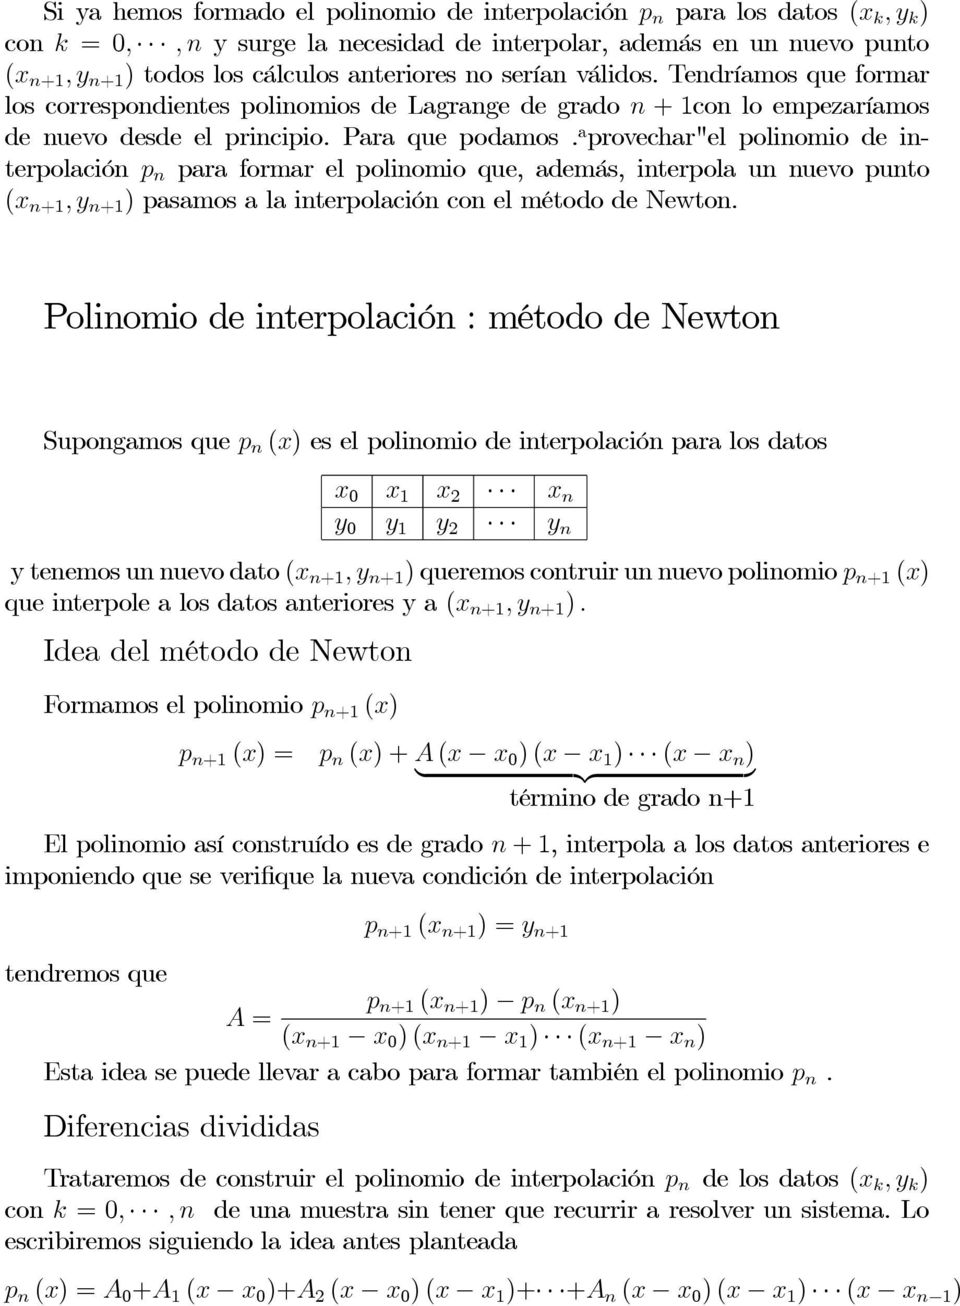 a provechar"el polinomio de interpolación p n para formar el polinomio que, además, interpola un nuevo punto (x n+1,y n+1 ) pasamos a la interpolación con el método de Newton.